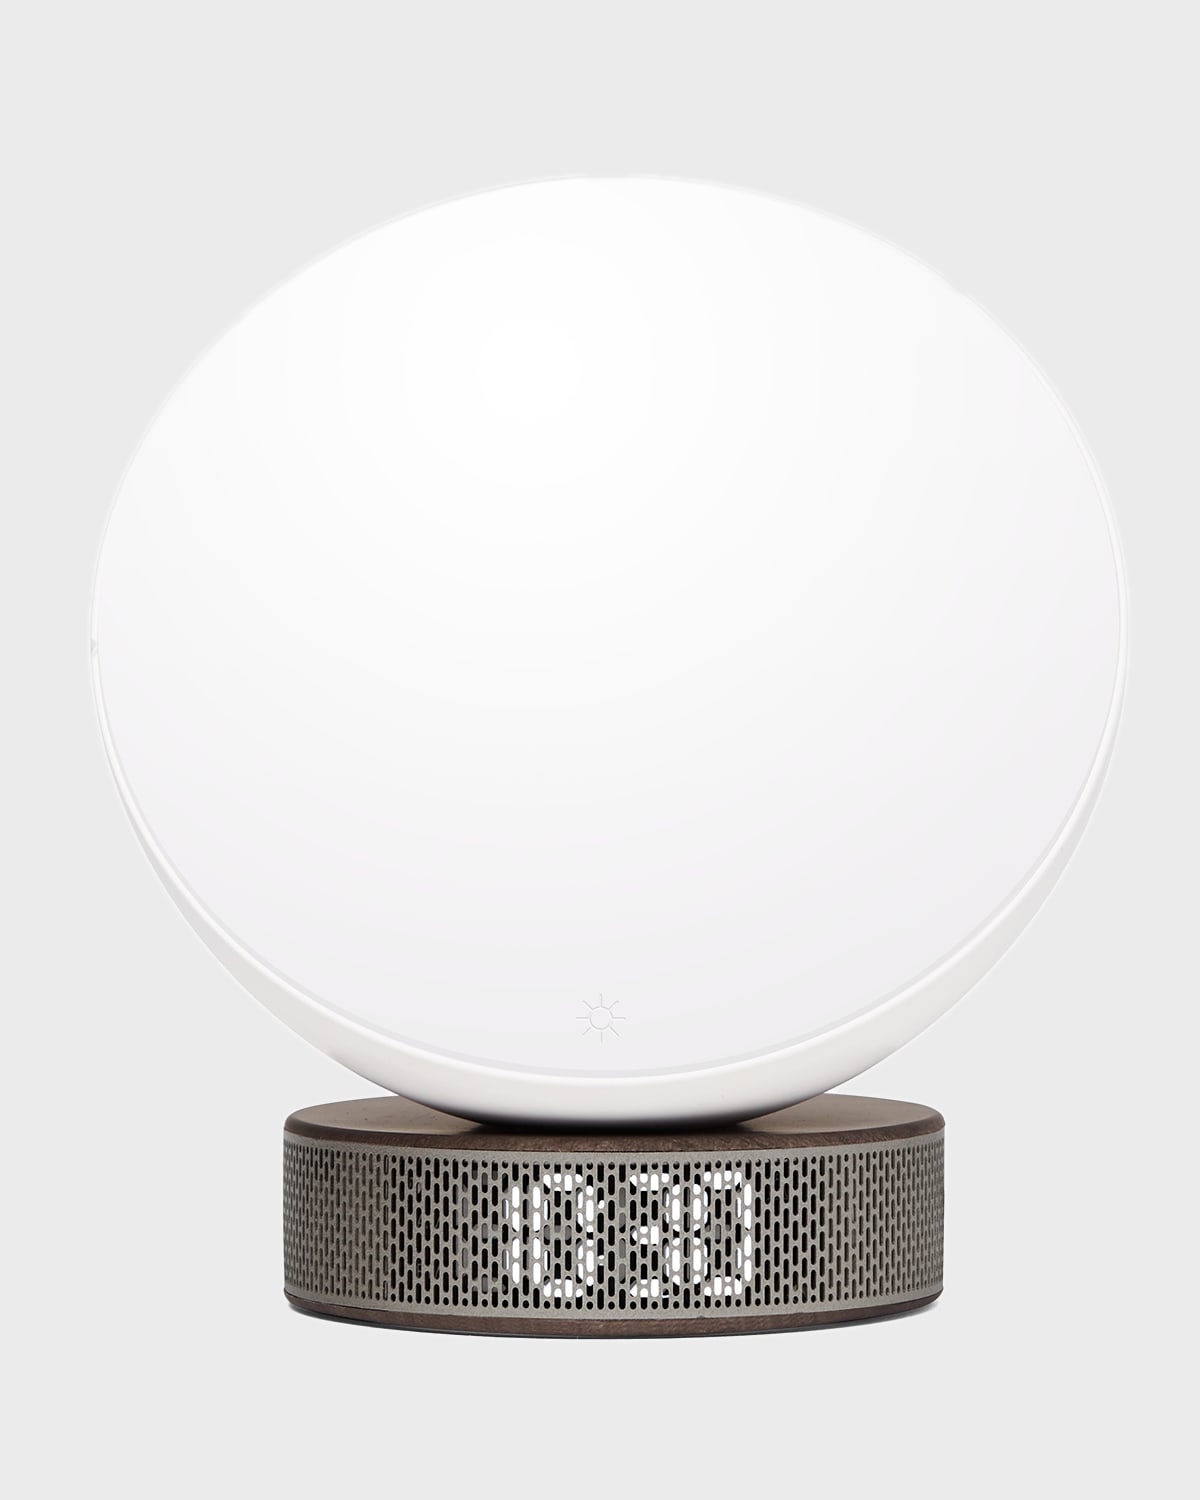 Lexon Design Miami Sunrise Simulator Light Alarm Clock